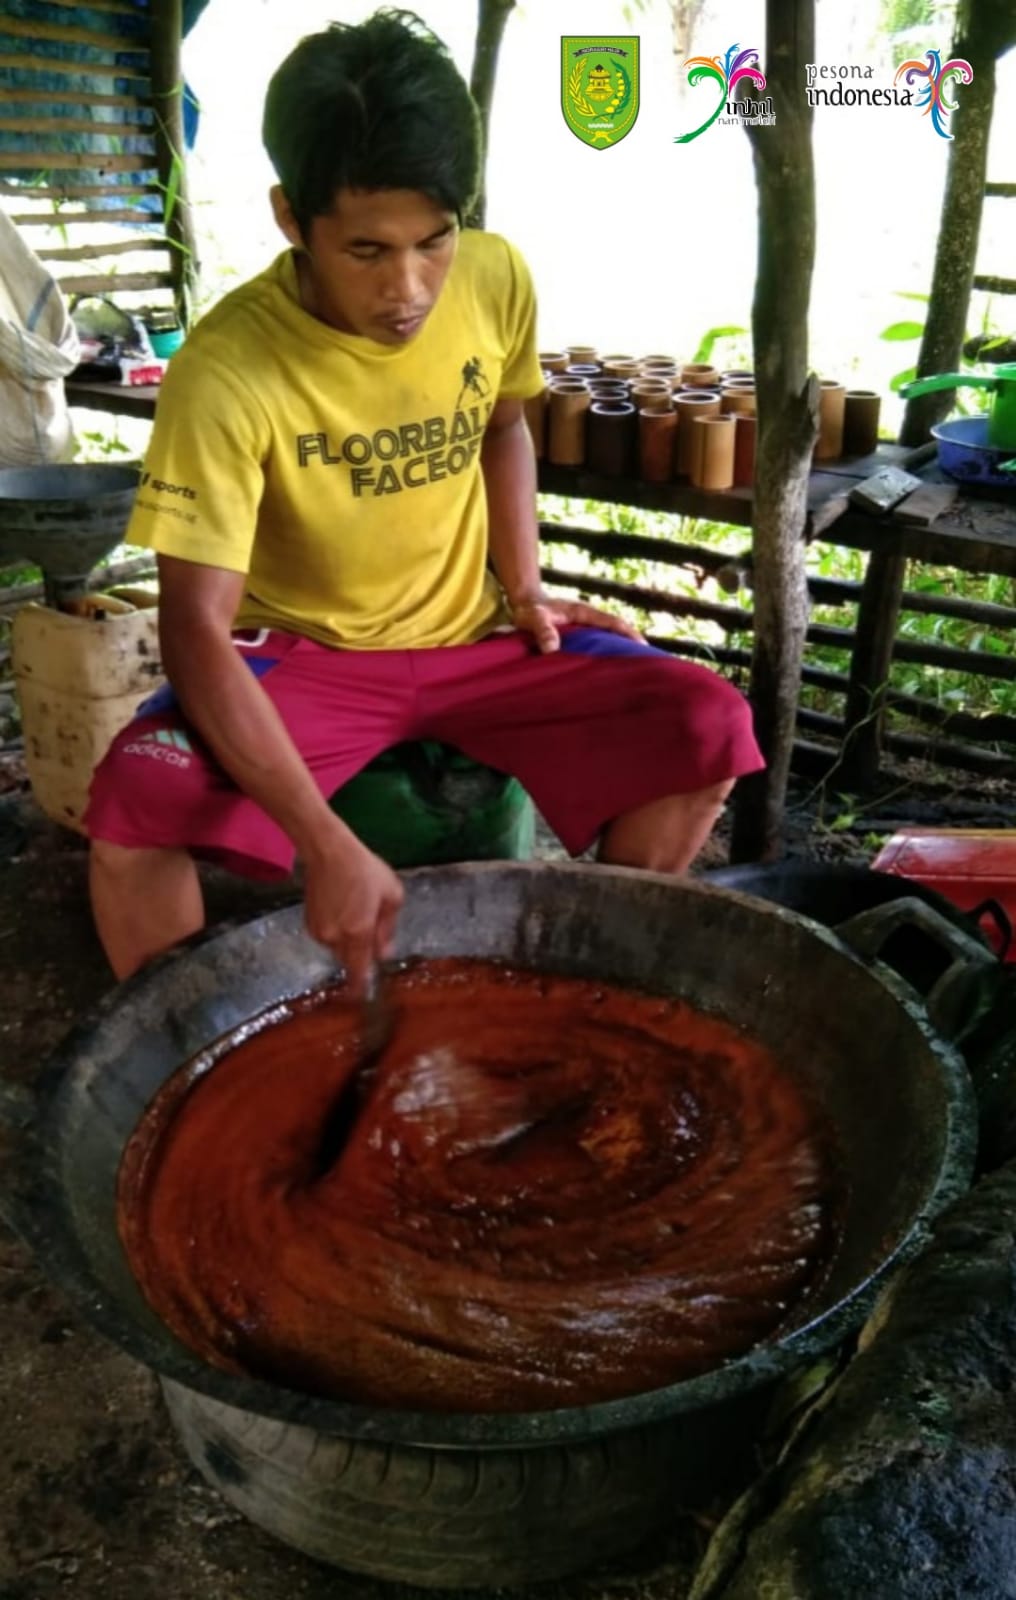 Gula Merah Olahahan Khas Indragiri Hilir, Salah Satu Oleh-oleh Bagi Wisatawan datang ke Inhil